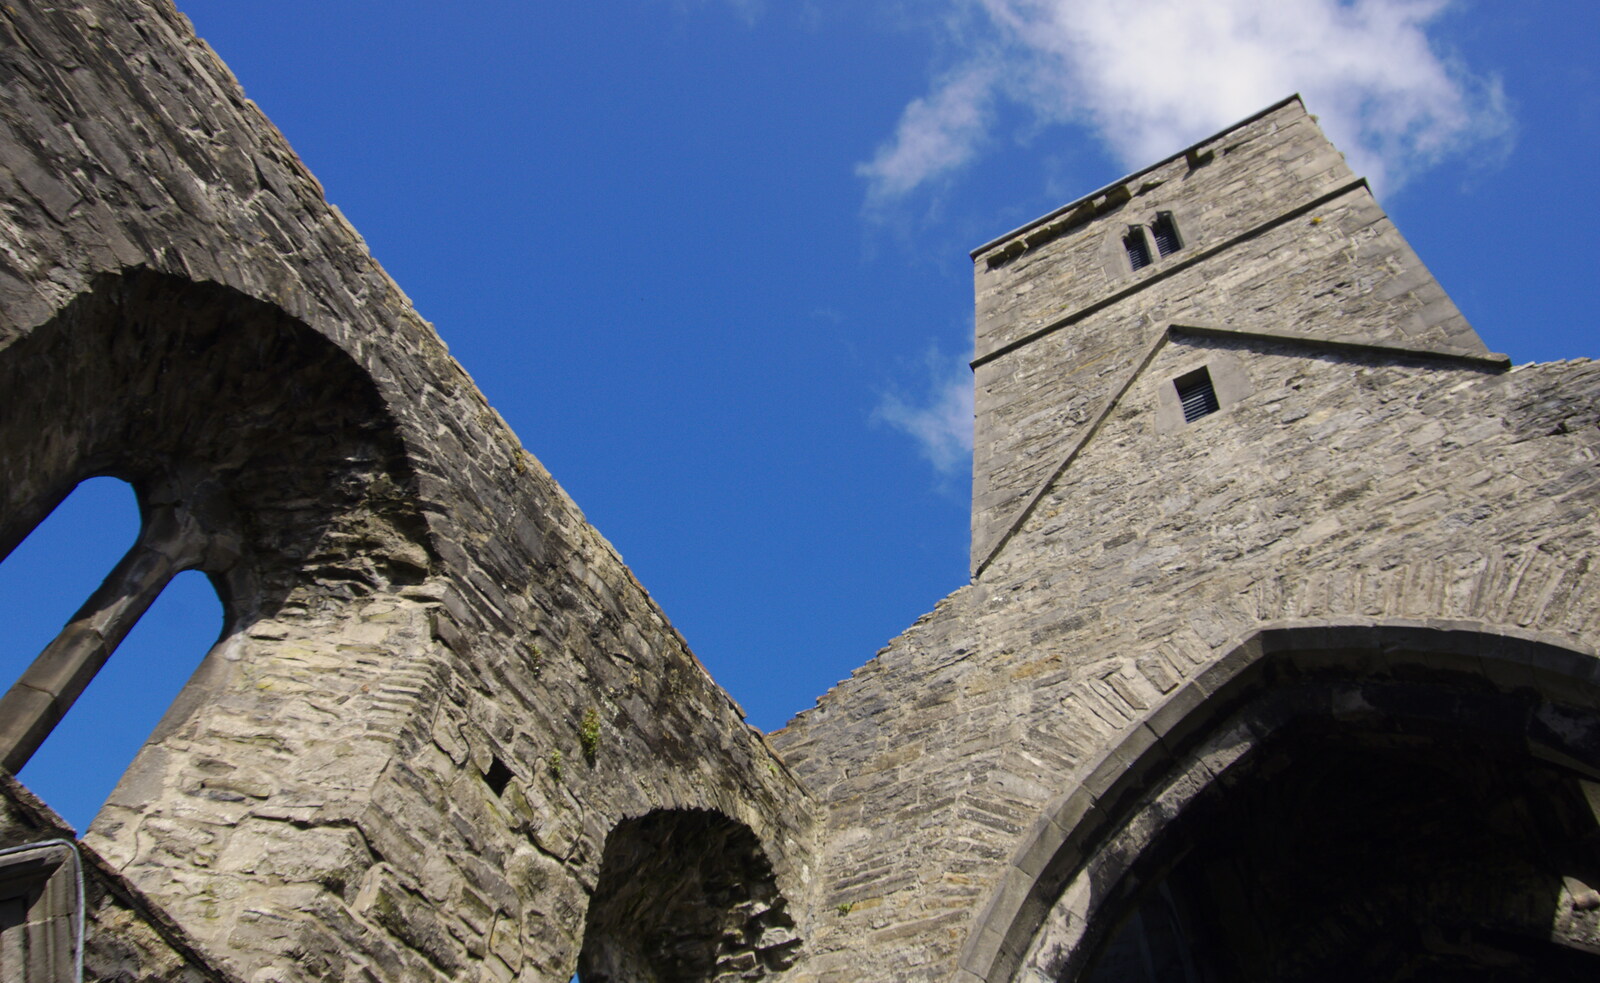 Sligo Abbey's tower from Florence Court and a Postcard from Sligo, Fermanagh and Sligo, Ireland - 21st August 2019